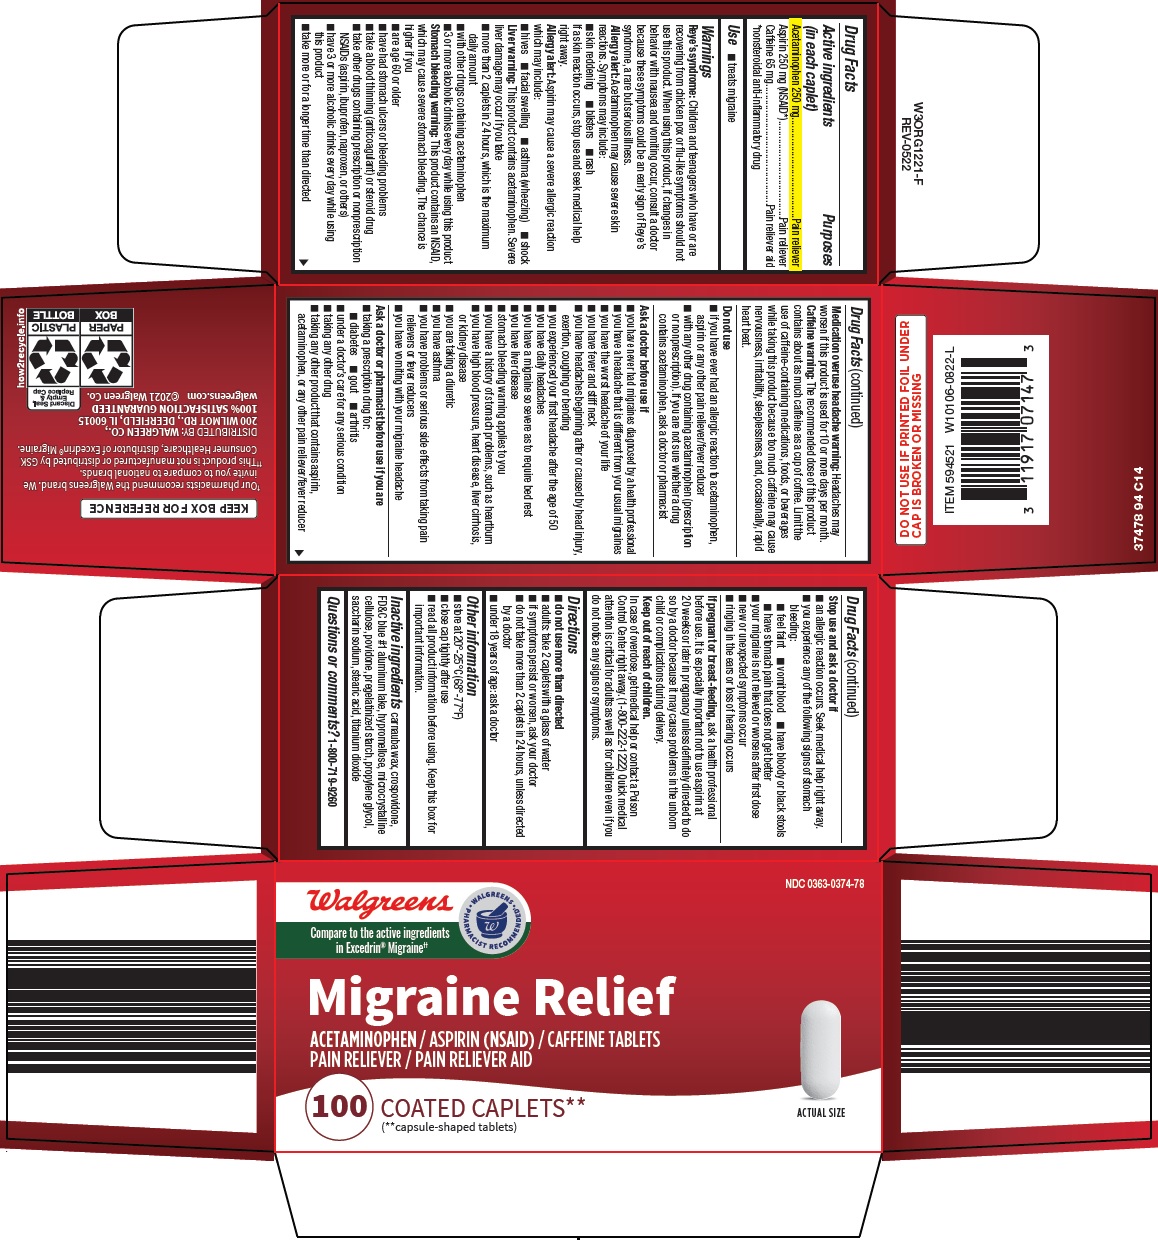 374-94-migraine-relief